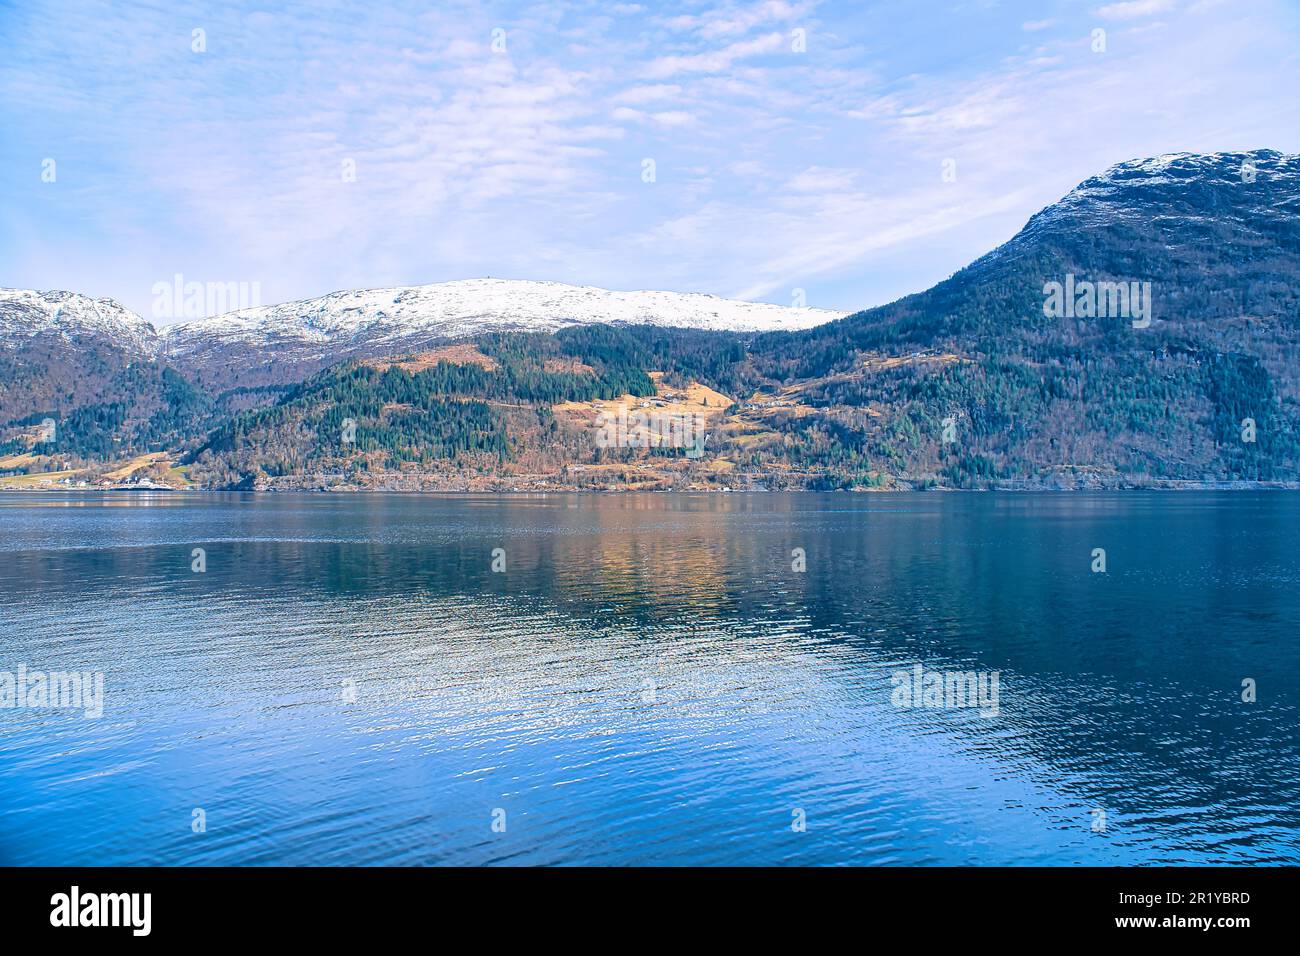 Fjord avec des montagnes enneigées à l'horizon. L'eau écoute en Norvège. Photo de paysage du nord Banque D'Images